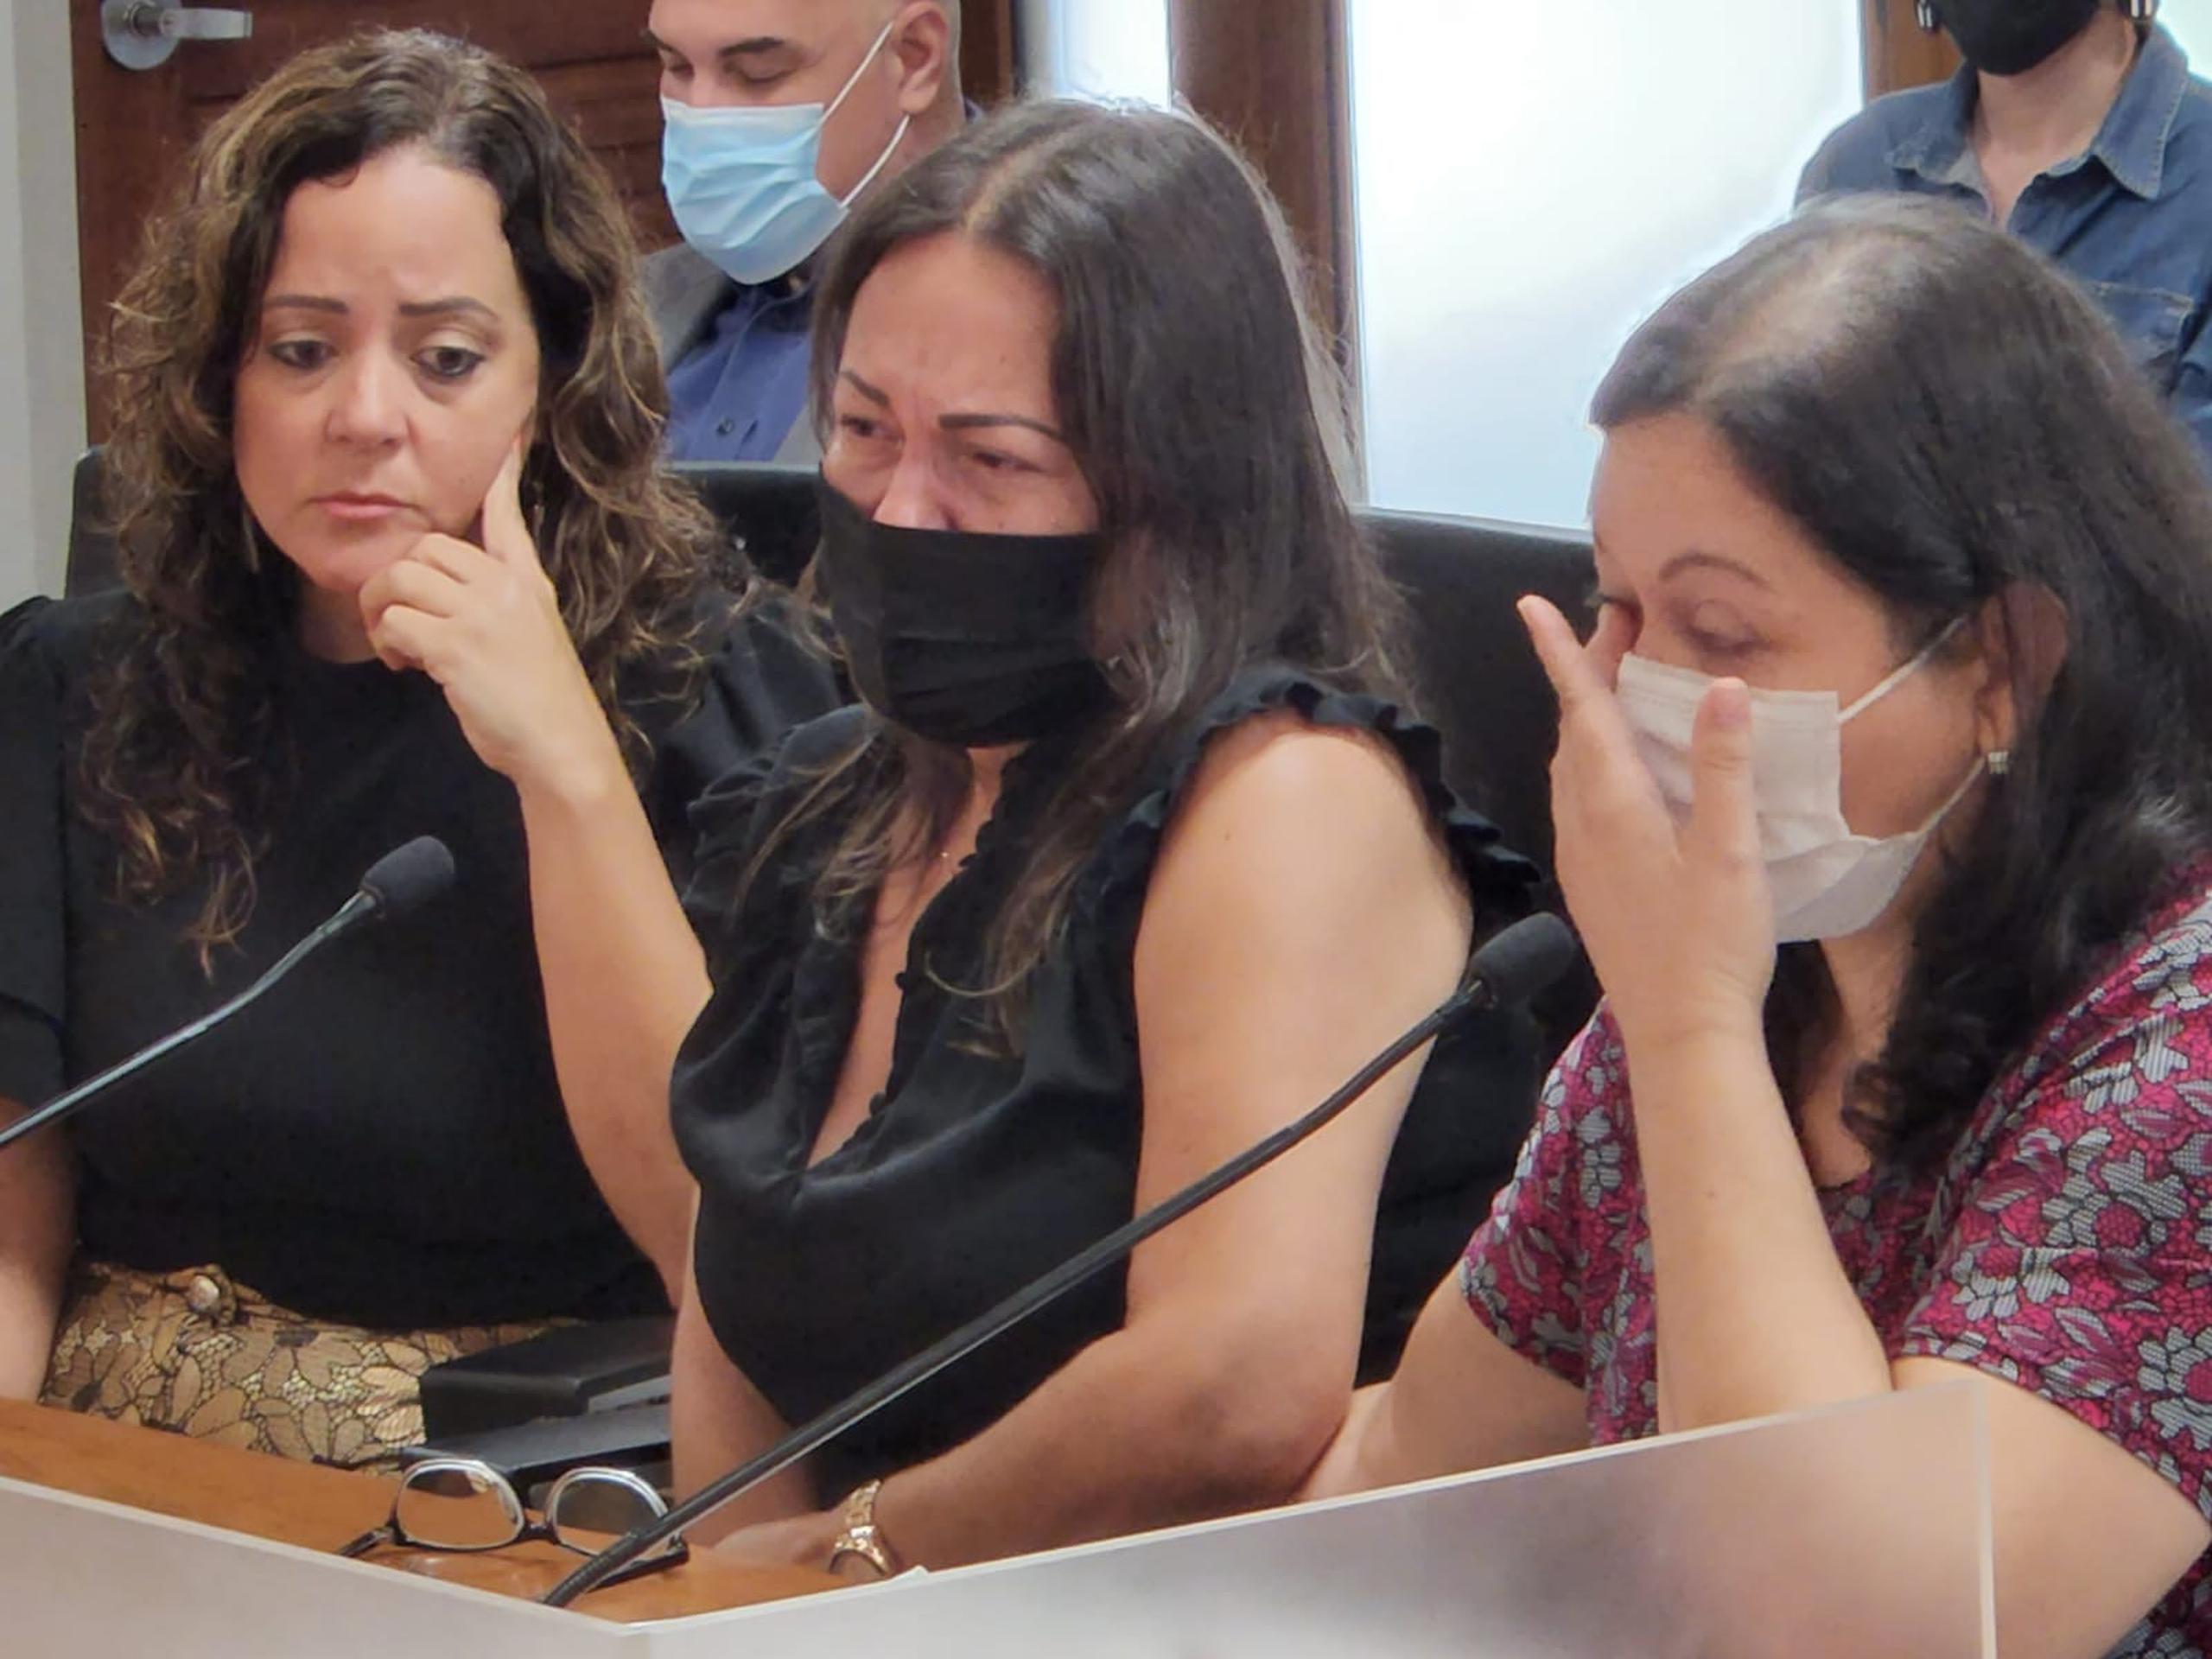 Al centro, Sheila Nevárez, madre de Javier A. Cordero Nevárez, quien fue baleado por agentes del Negociado de la Policía.